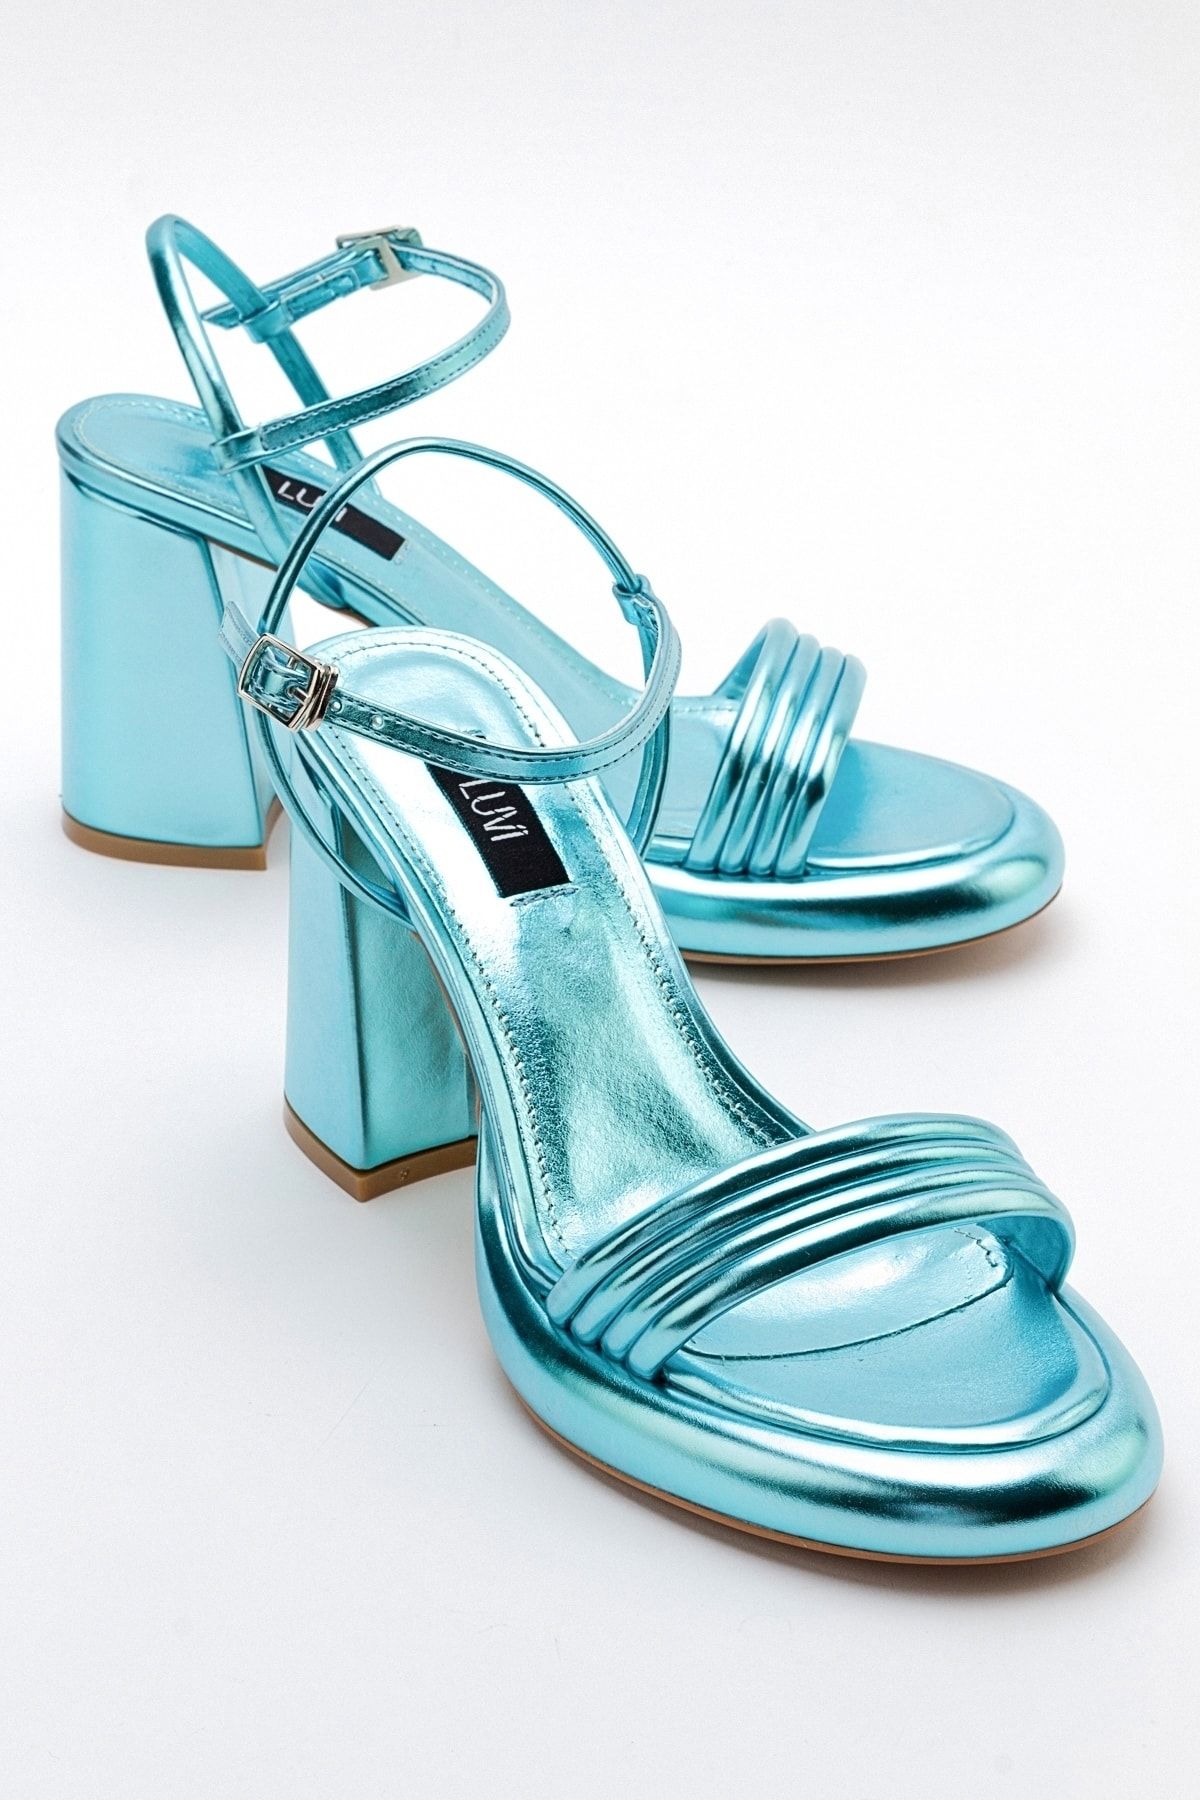 luvishoes Bebe Mavi Metalik Kadın Topuklu Ayakkabı